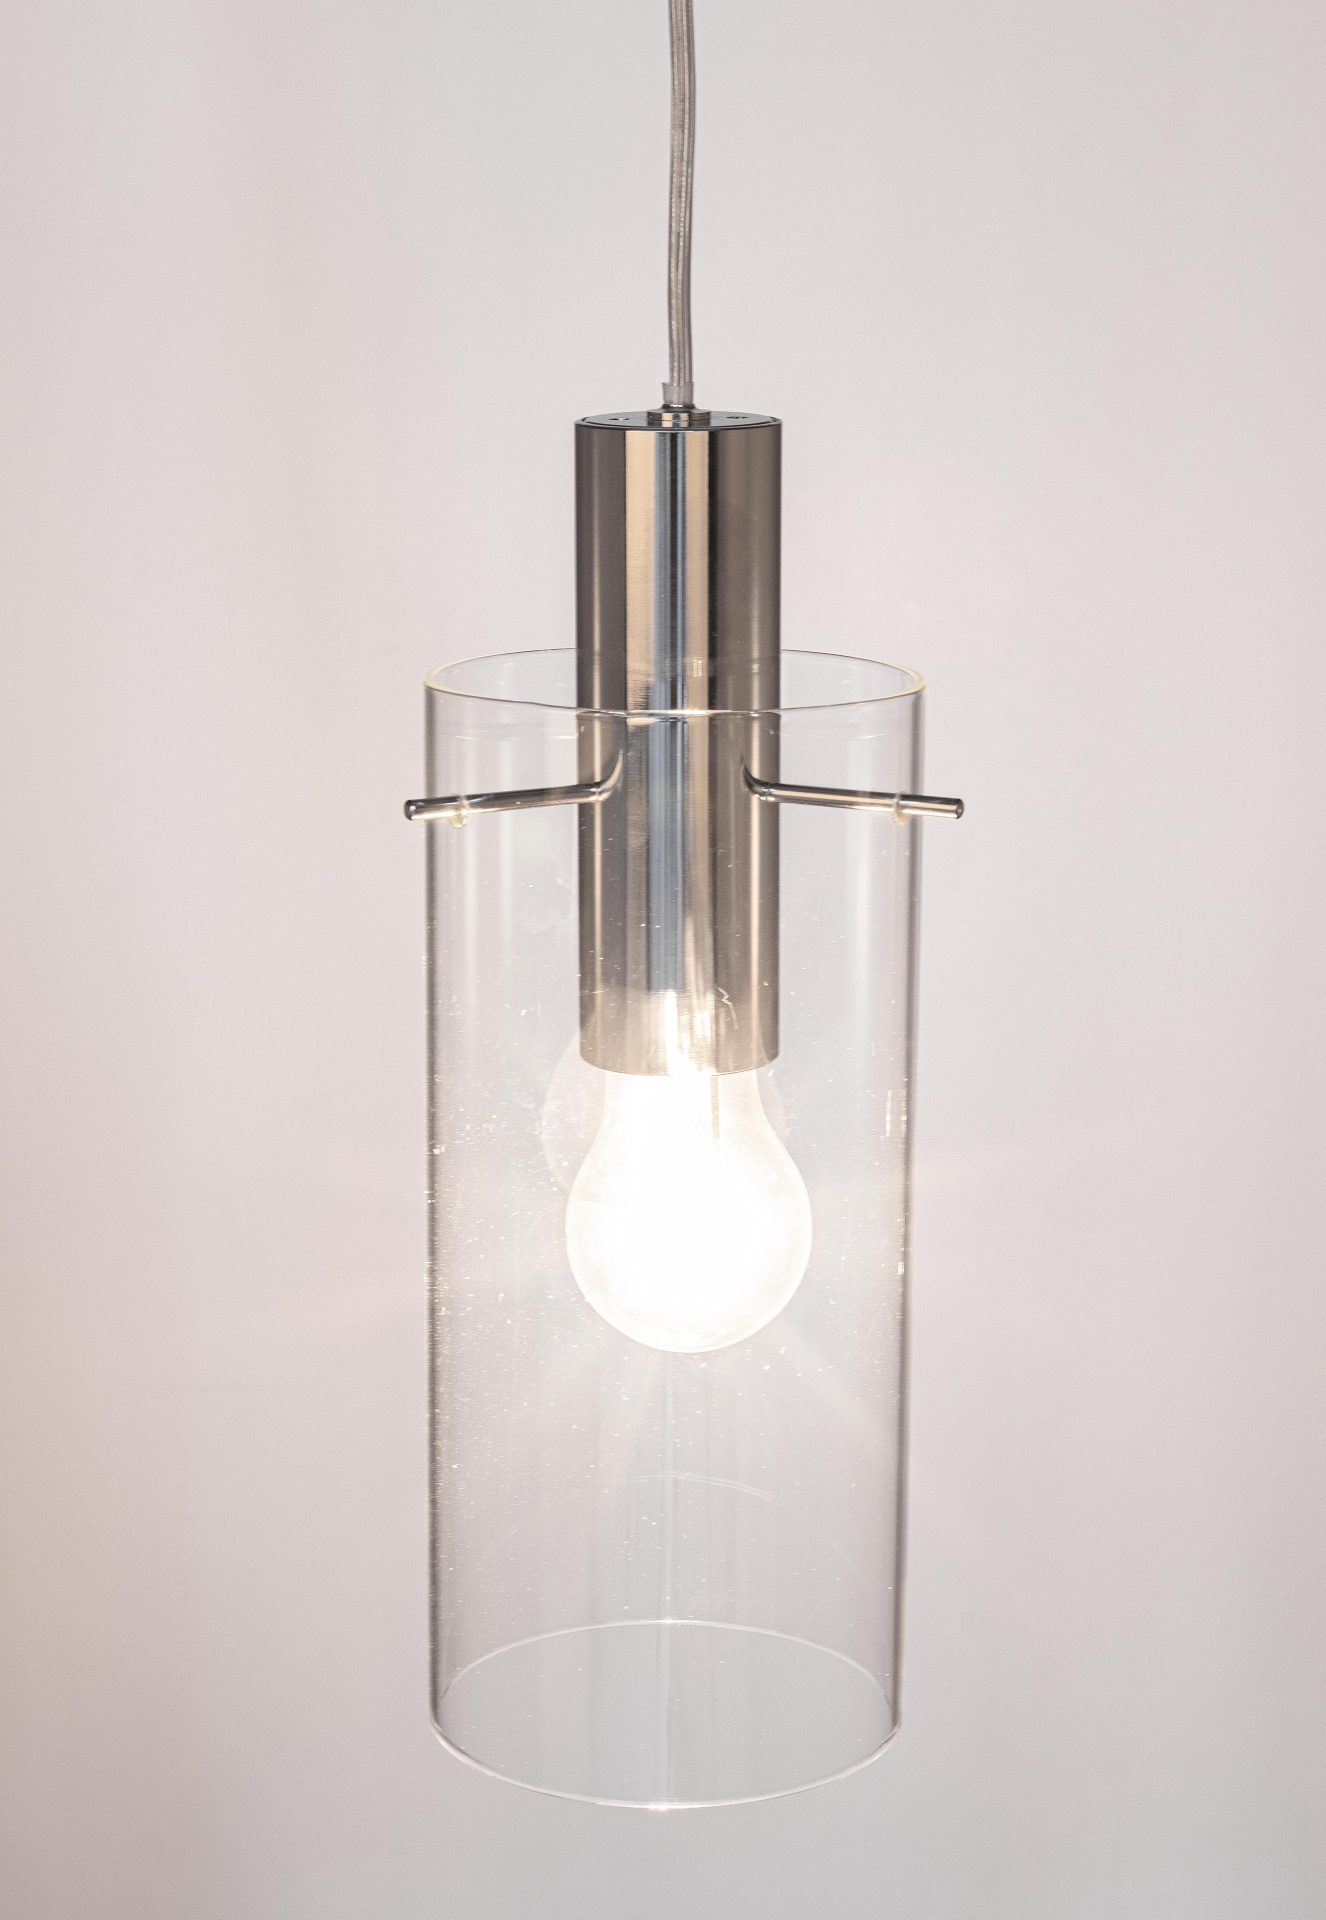 Die Hängeleuchte Aglow überzeugt mit ihrem modernen Design. Gefertigt wurde sie aus Metall, welches einen silberne Farbton besitzt. Der Lampenschirm ist aus Glas und ist klar. Die Lampe besitzt eine Höhe von 130 cm.